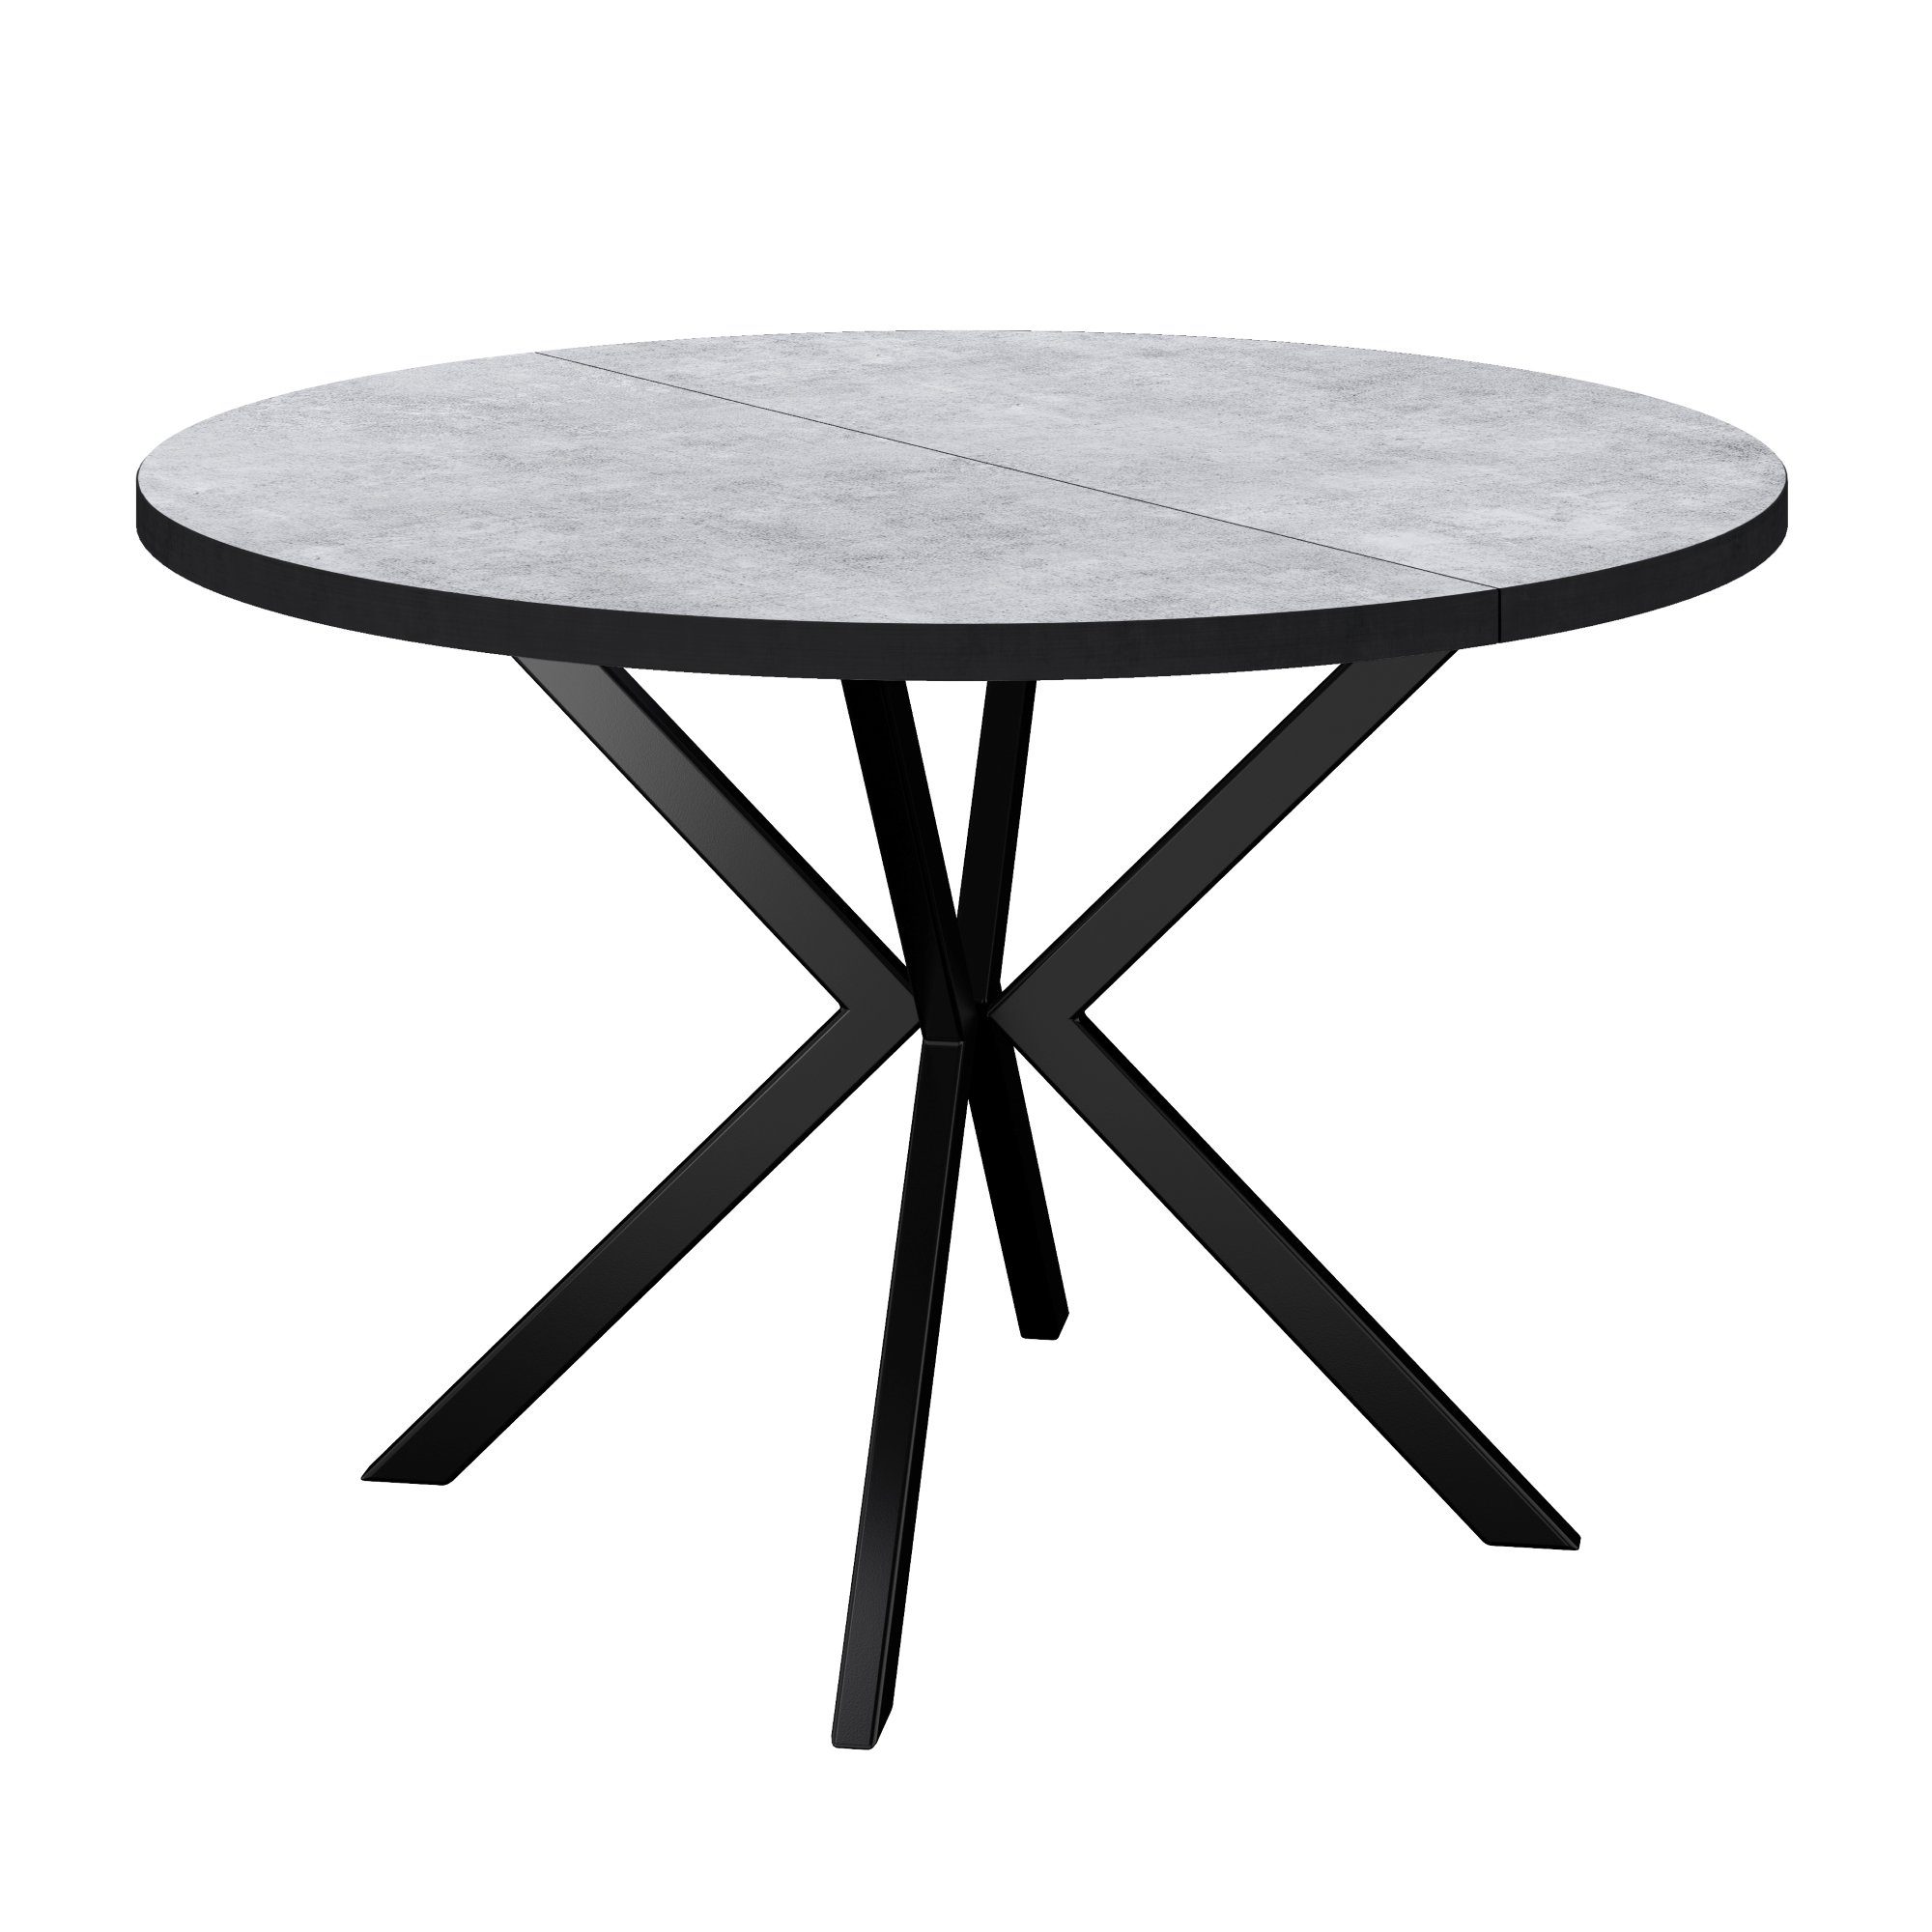 Polini Home Tischplatte, laminierte beton Beton 100 schwarzer Esstisch Kante/schwarz, BAARN schwarze extra und stoß- hitzebeständig, mit kratzfest, kante Esstisch